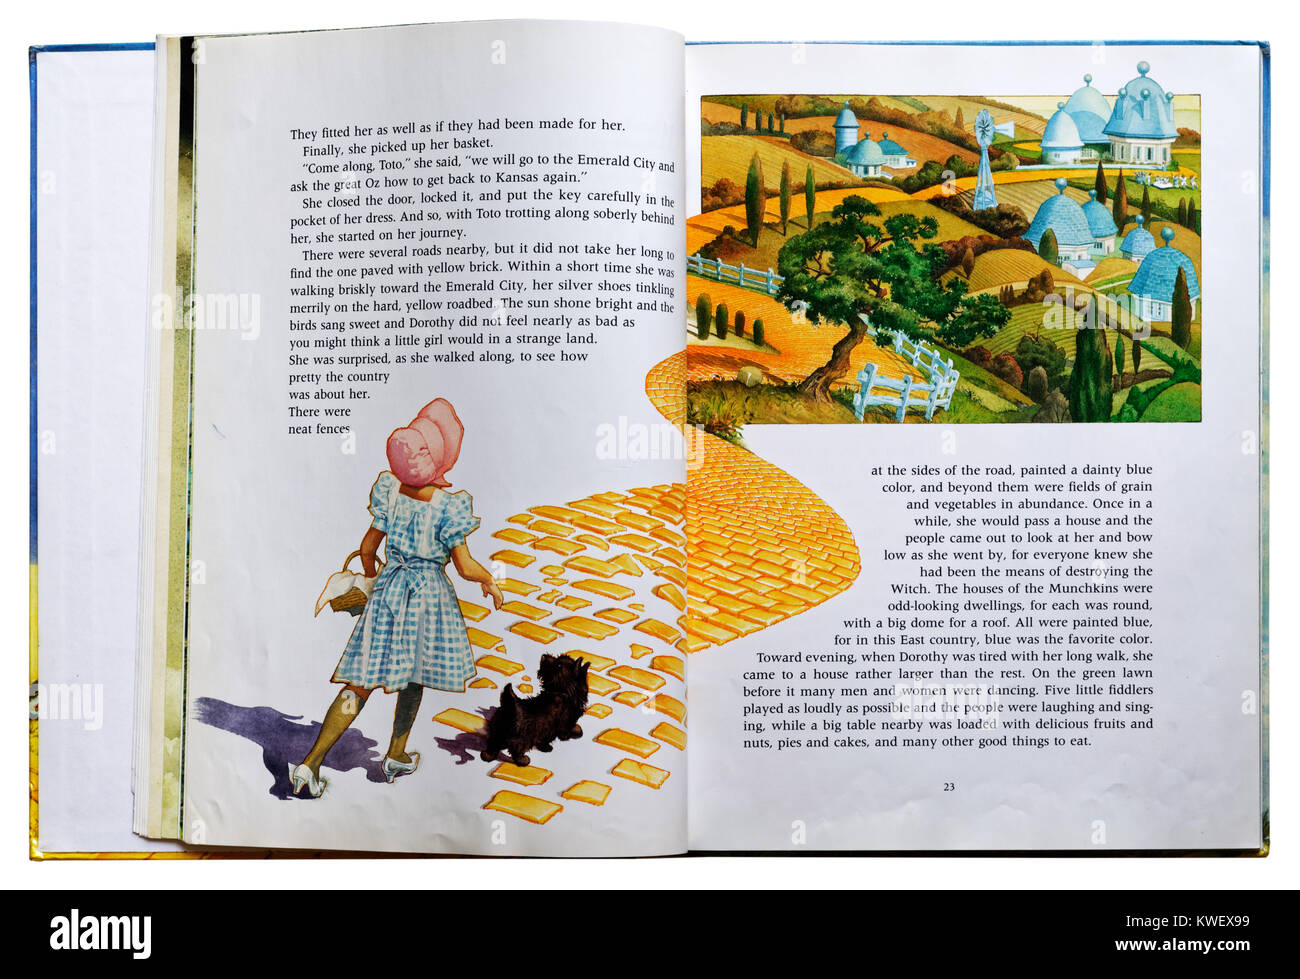 Dorothy sul mattone giallo strada in un libro illustrato del Wizard of Oz Foto Stock